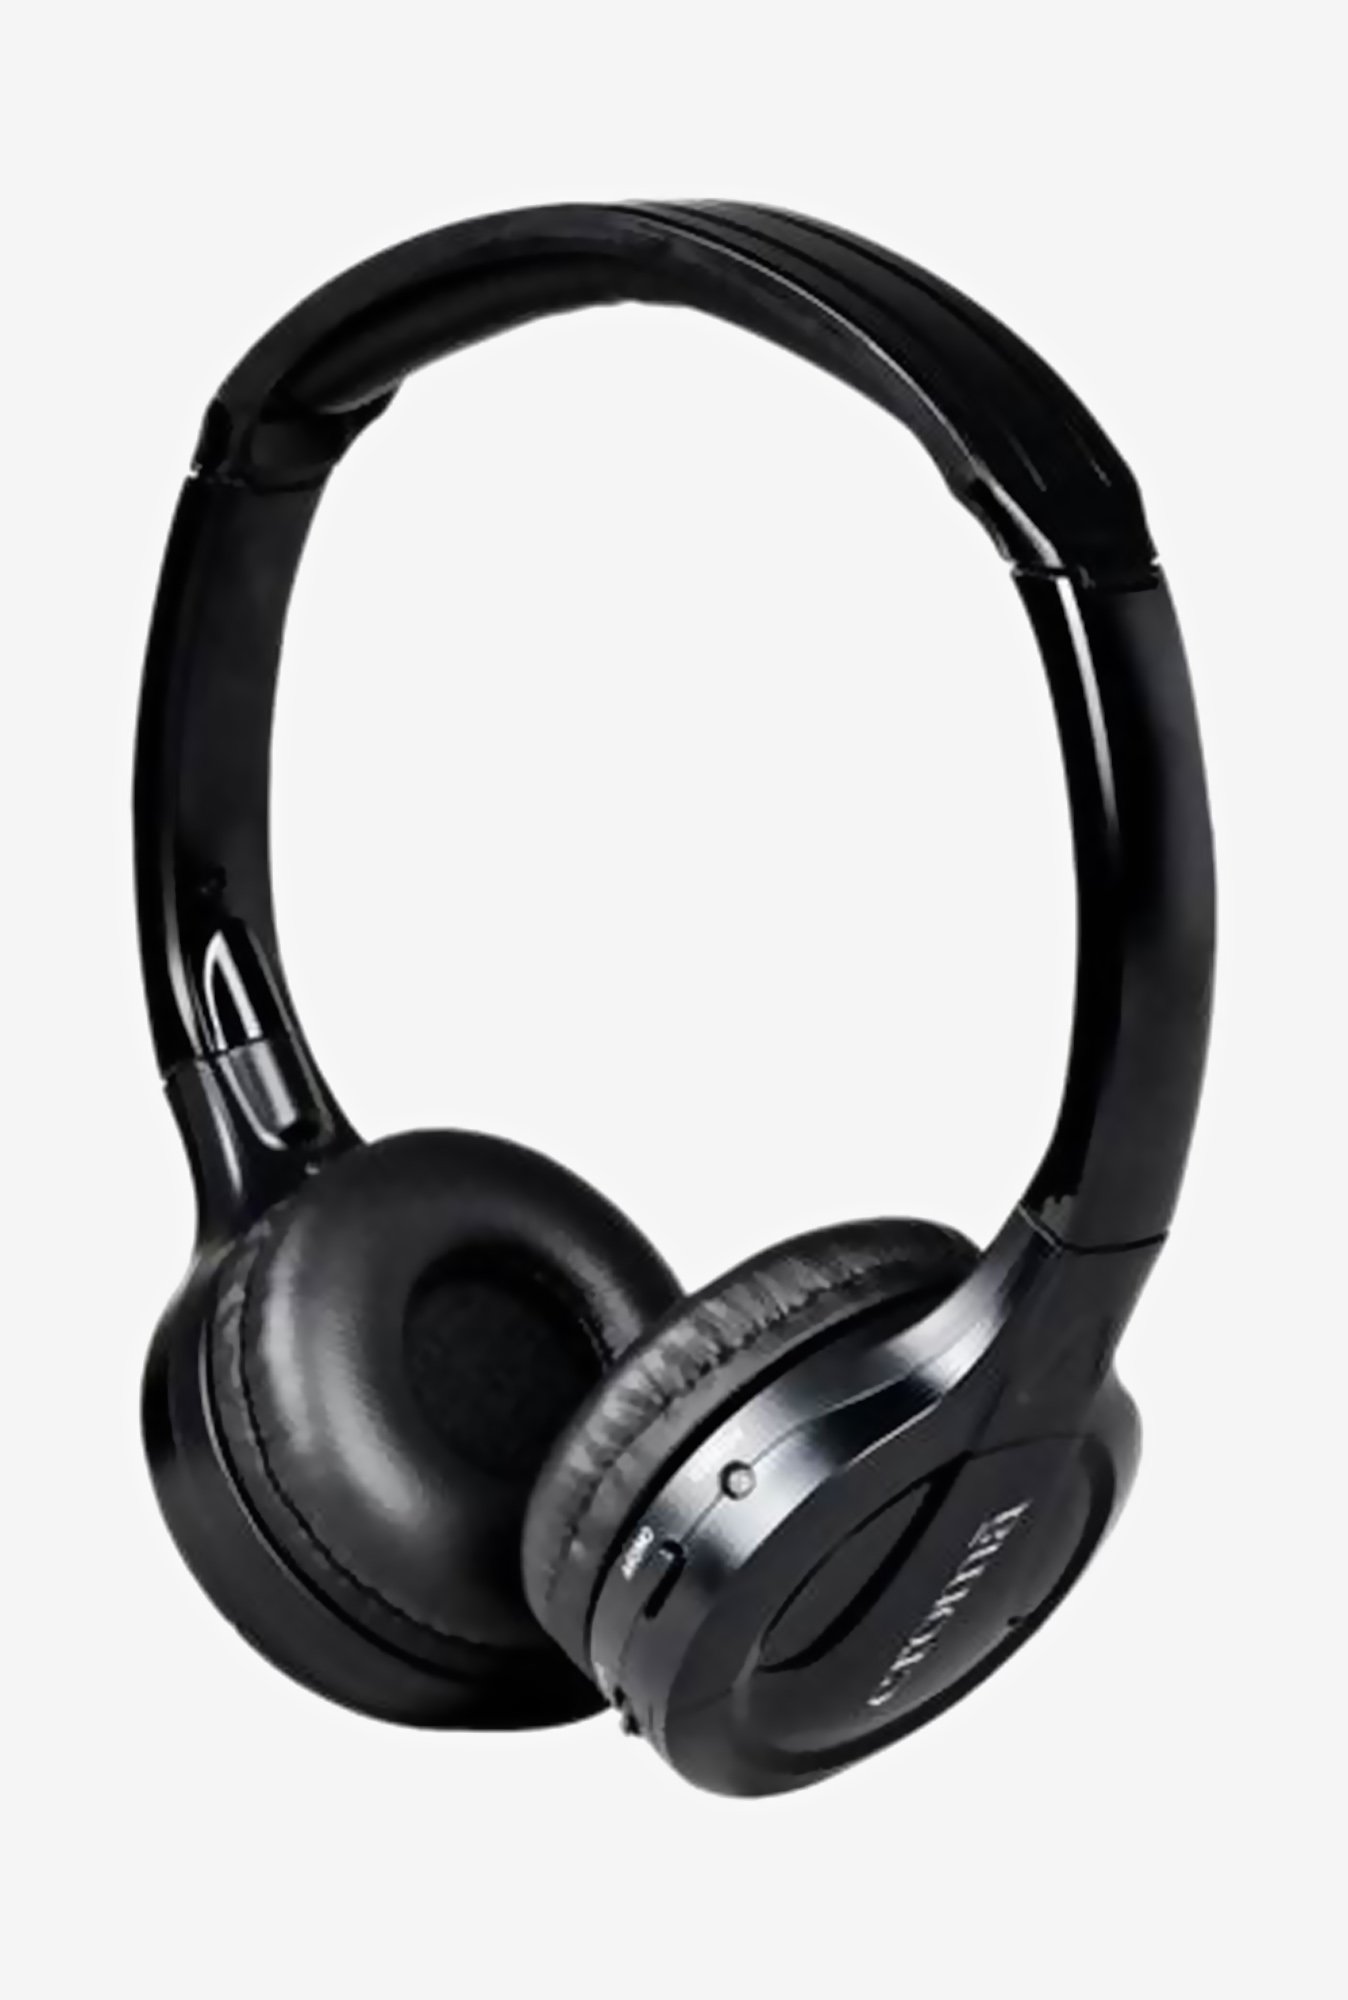 For 894/-(74% Off) Croma CREA5016 Headphone (Black) at TATA CLiQ